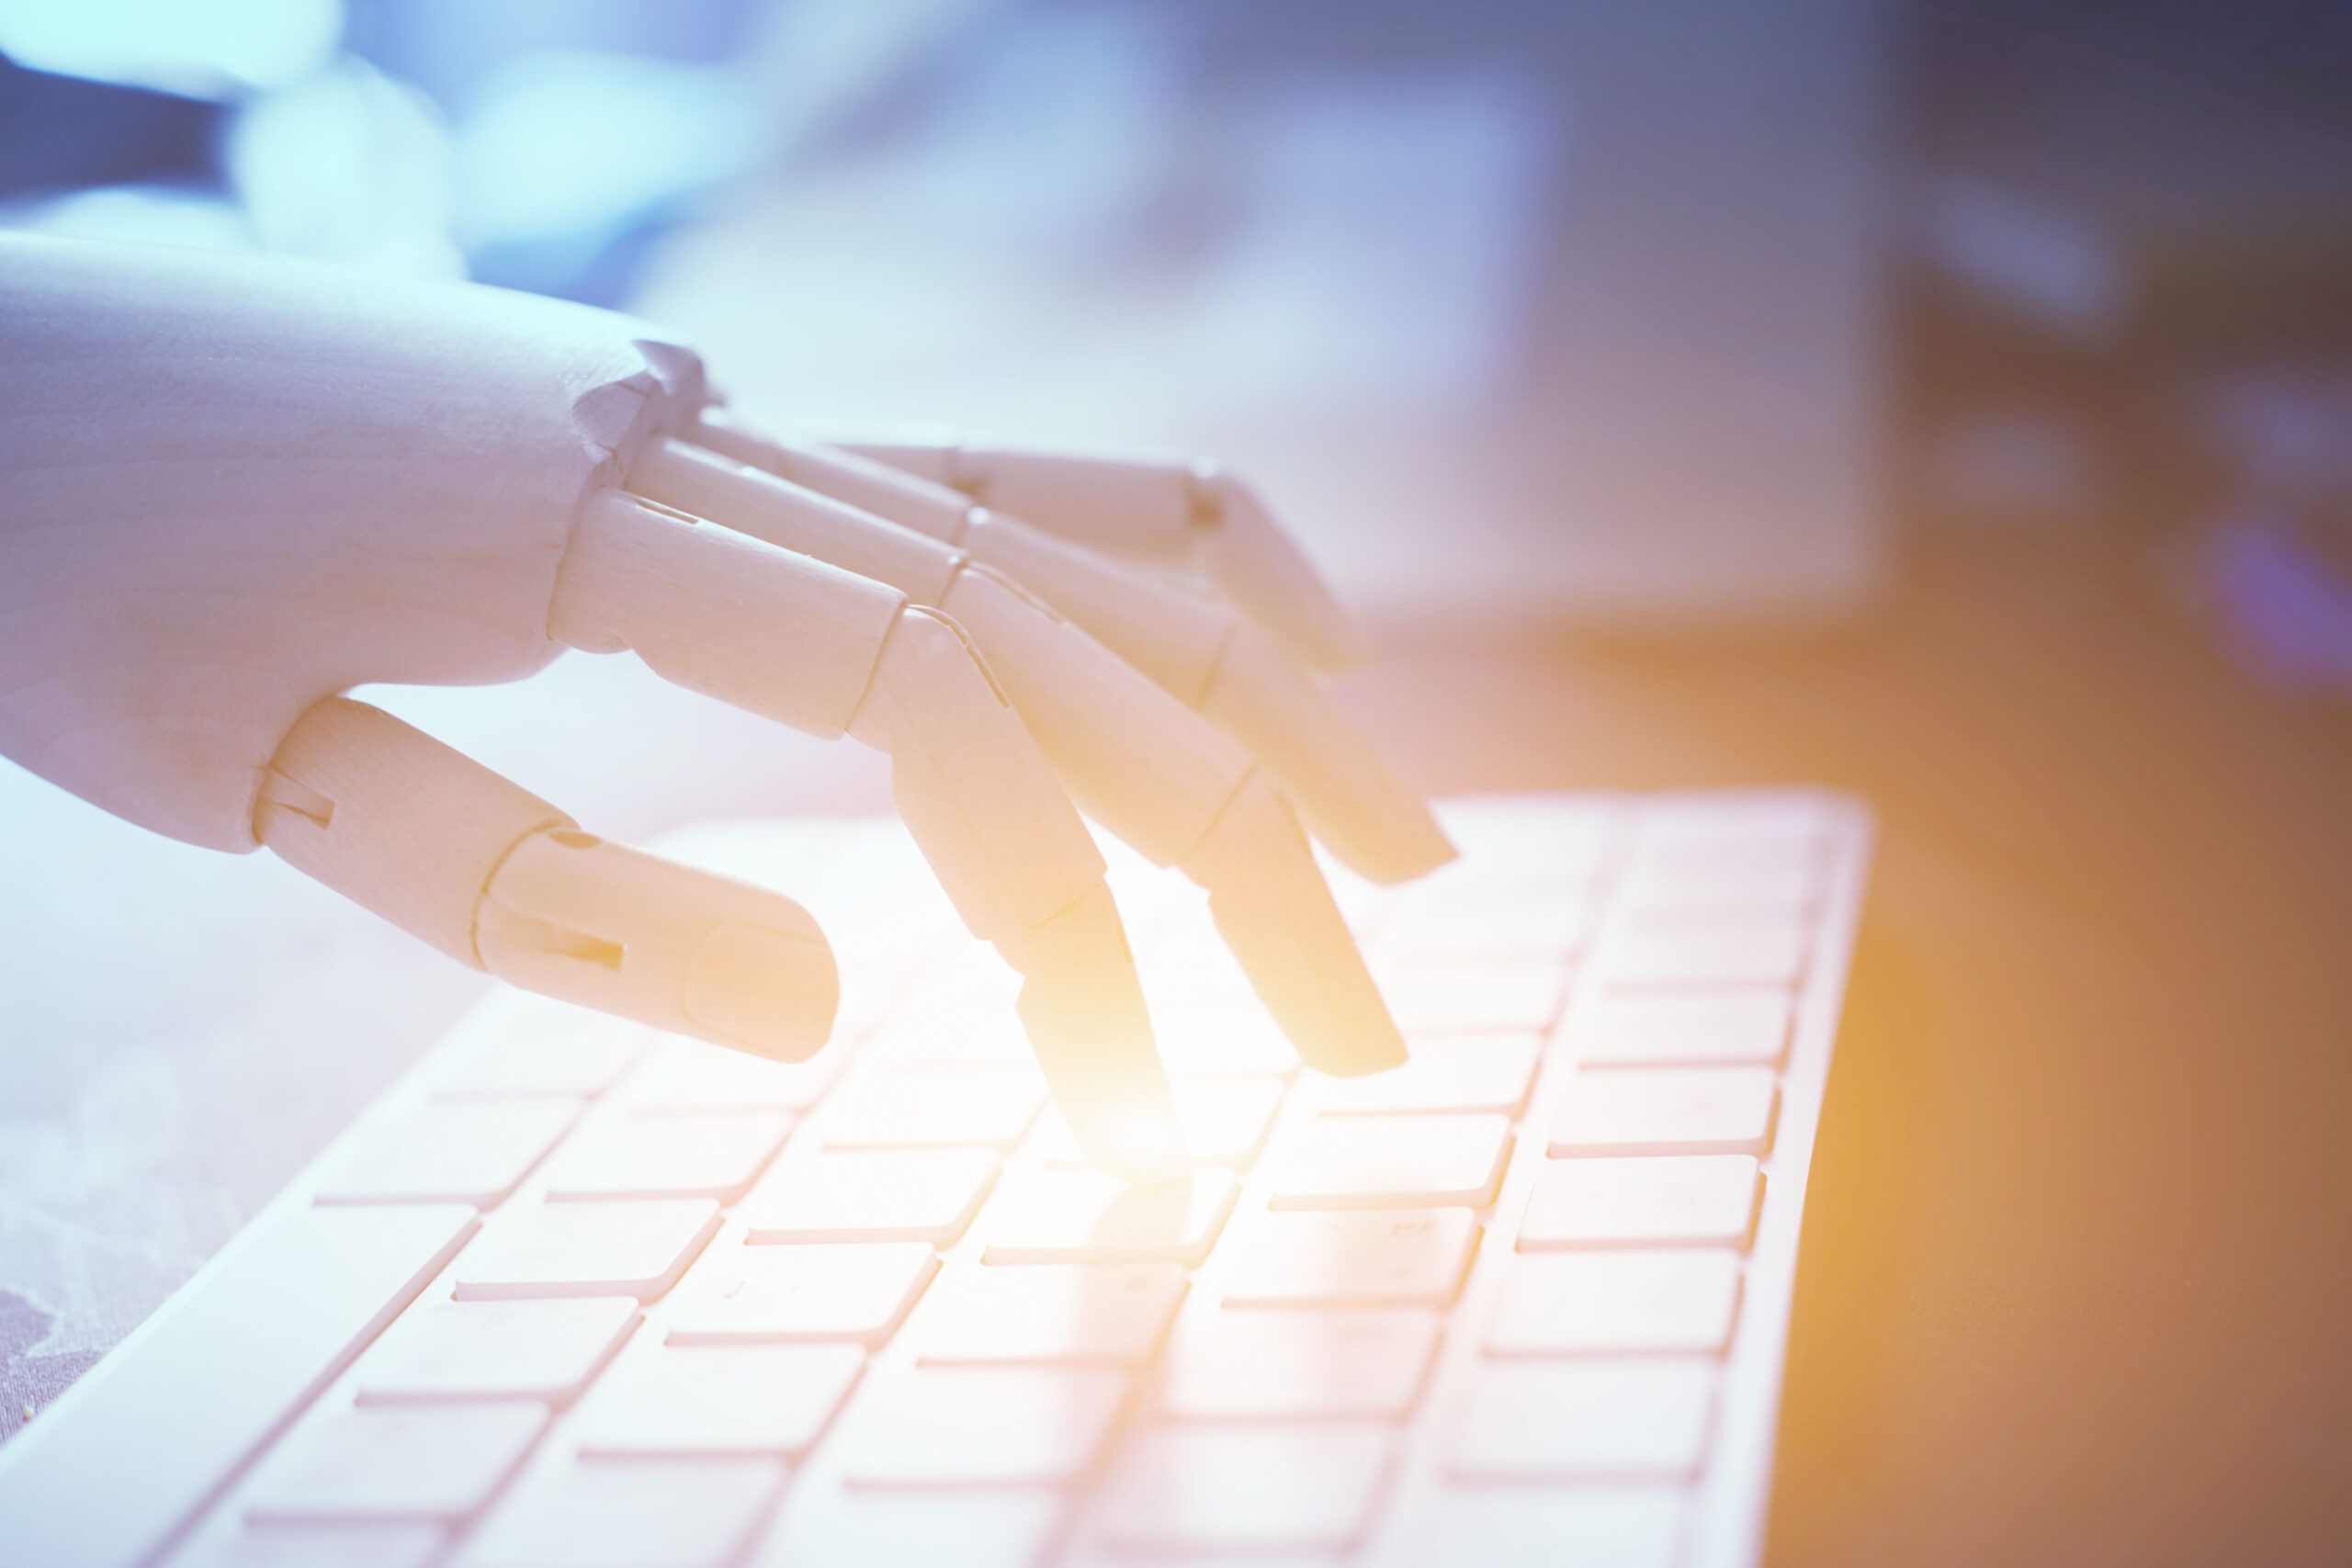 Künstliche Intelligenz, Robotter Hand auf Computertastatur, helle Farben, Tageslicht durchs Fenster